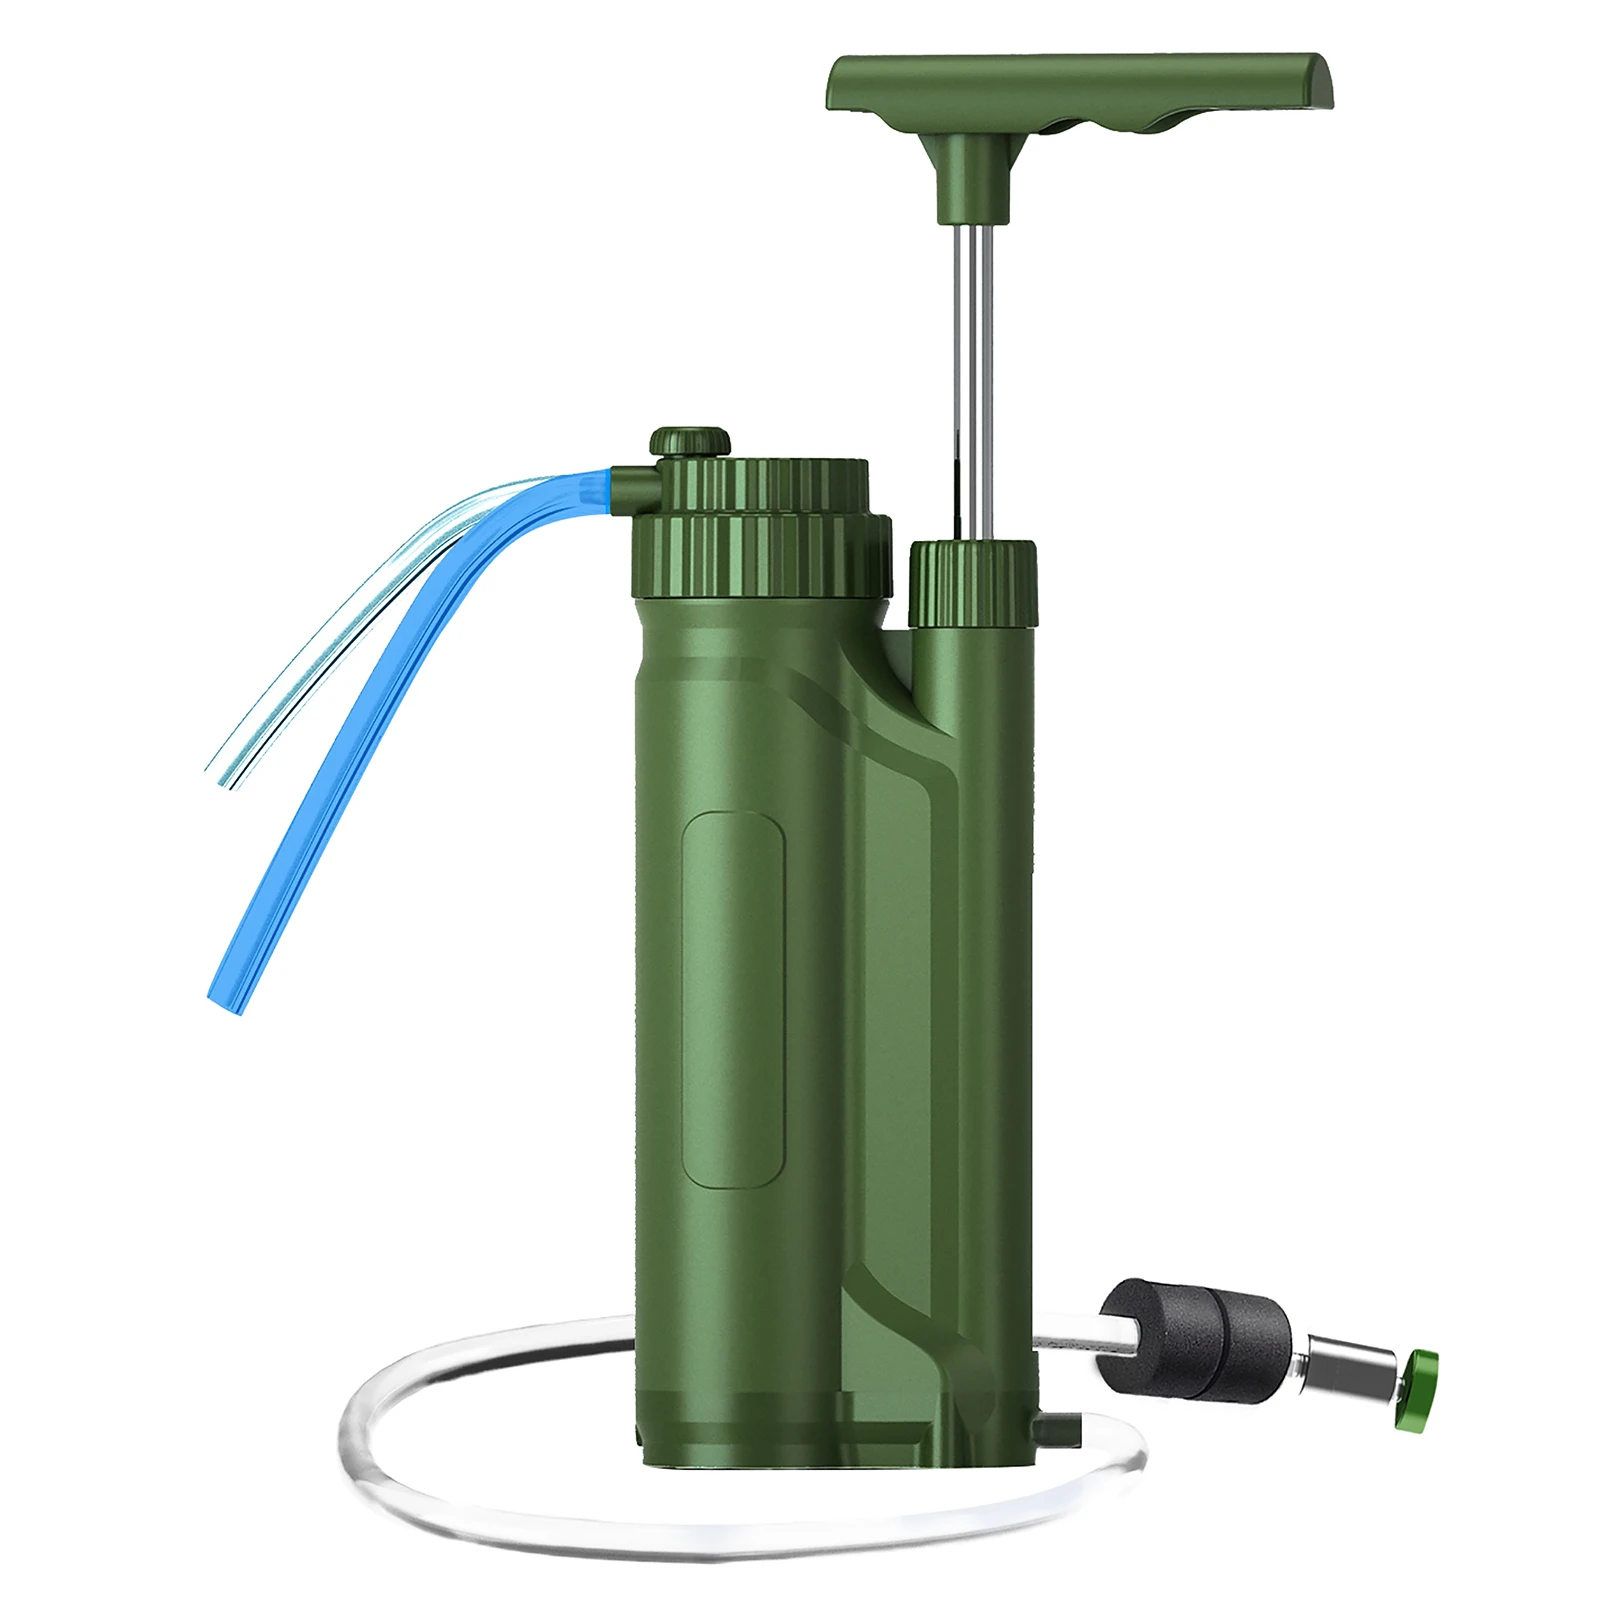 

Портативная система очистки воды UF/RO насос водяного фильтра, система очистки воды для кемпинга, пешего туризма, путешествий, готовность к аварийным ситуациям